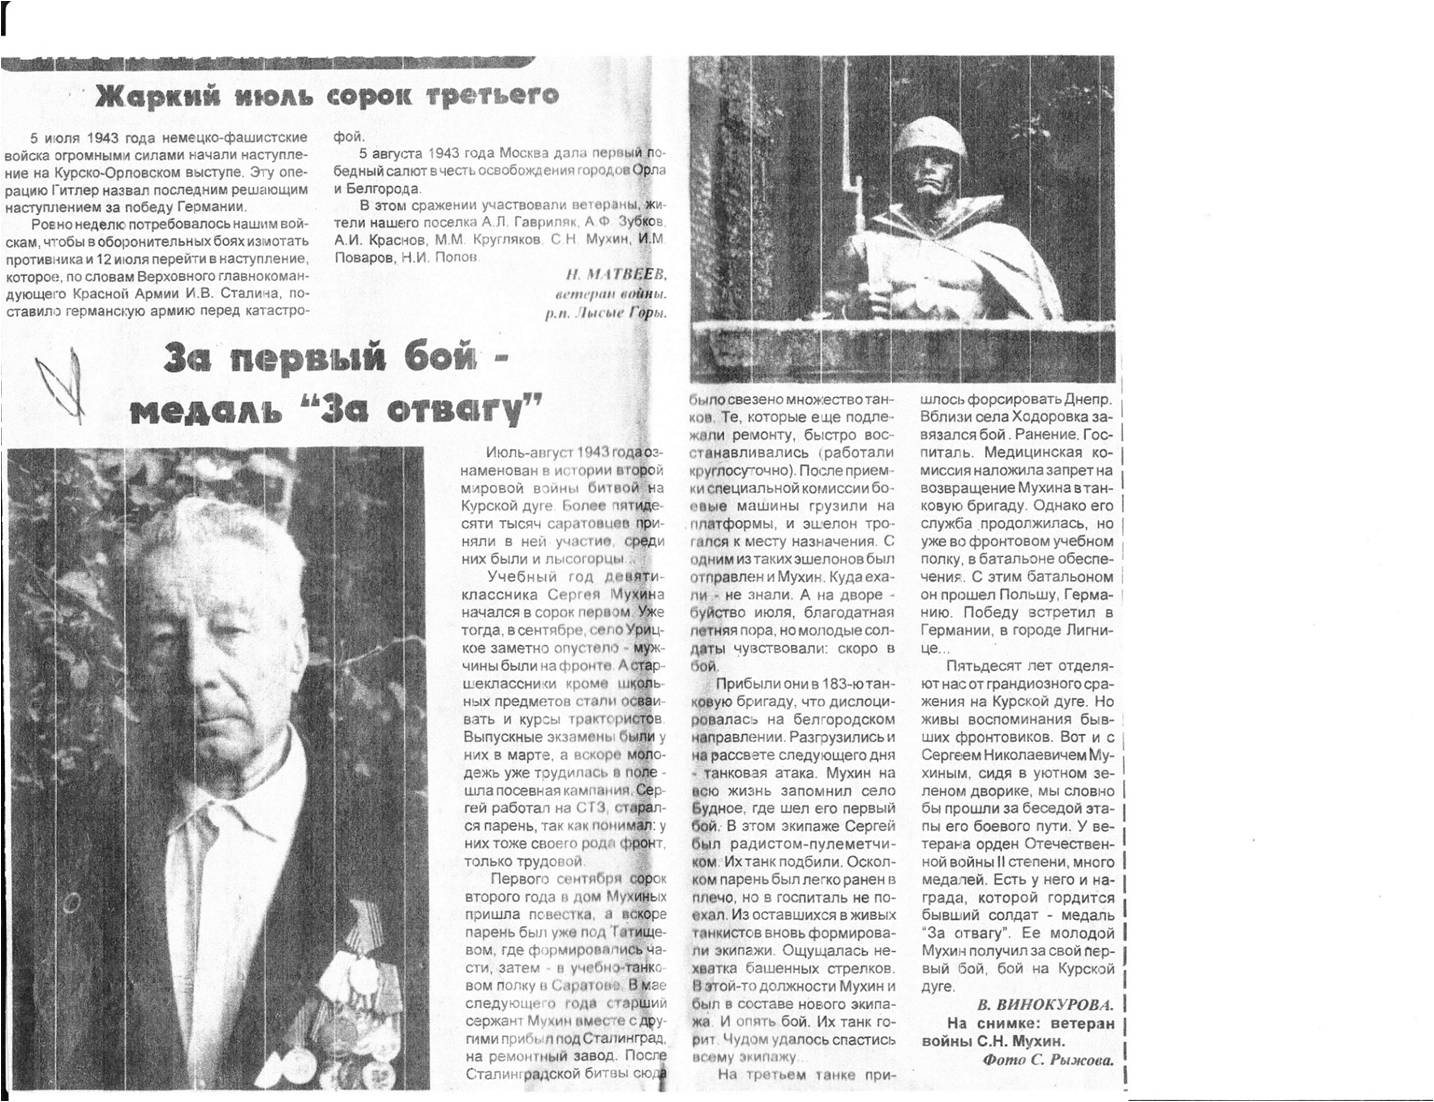 Заметка Сергее Николаевиче Мухинев газете &amp;amp;laquo;Призыв&amp;amp;raquo;от4 августа 1998 года